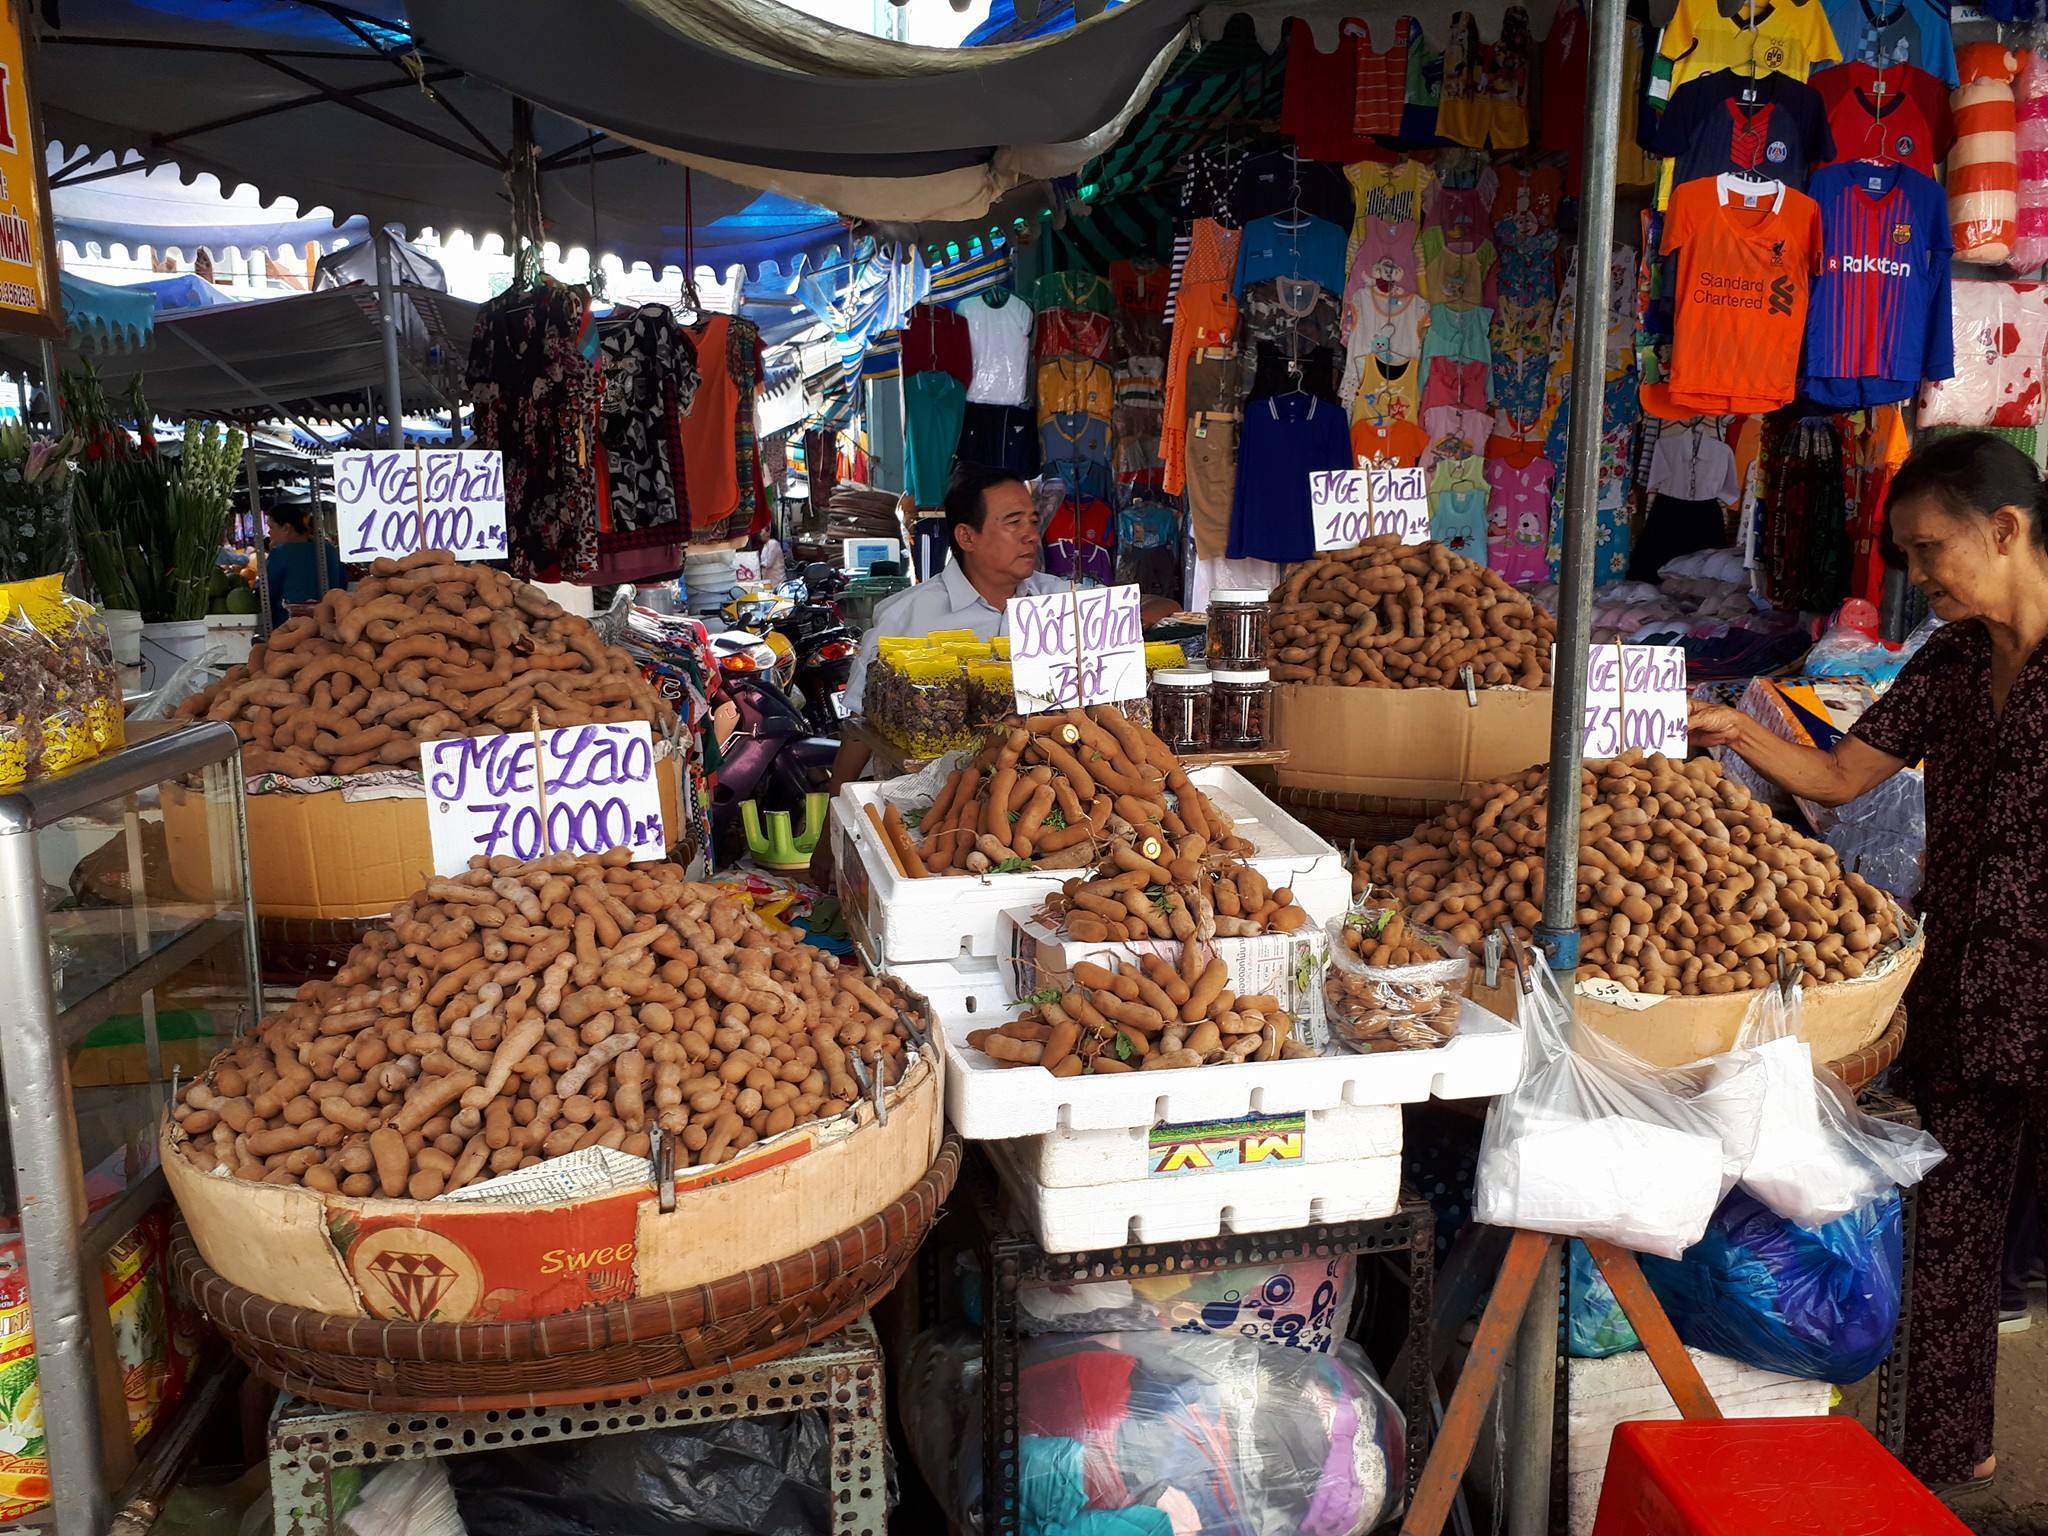 Kinh nghiệm mua sắm và ăn uống tại Chợ Châu Đốc - An Giang